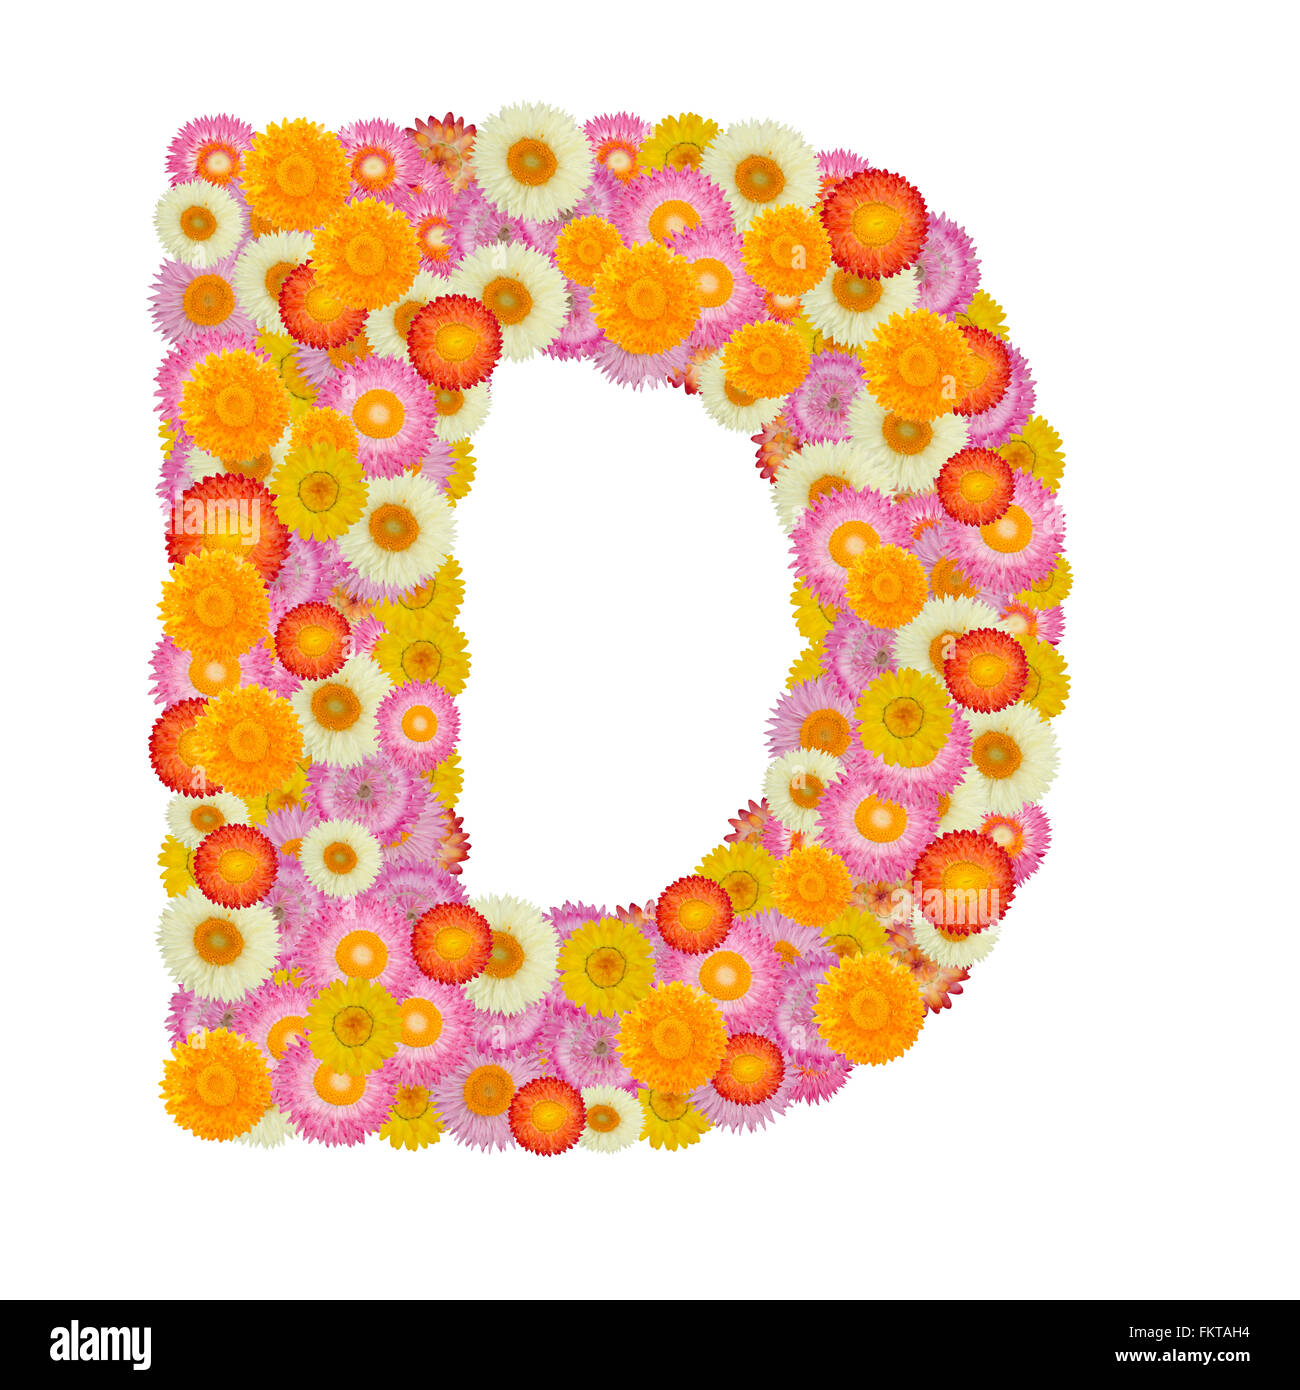 Lettre d'alphabet à fleur de paille isolé sur fond blanc Banque D'Images